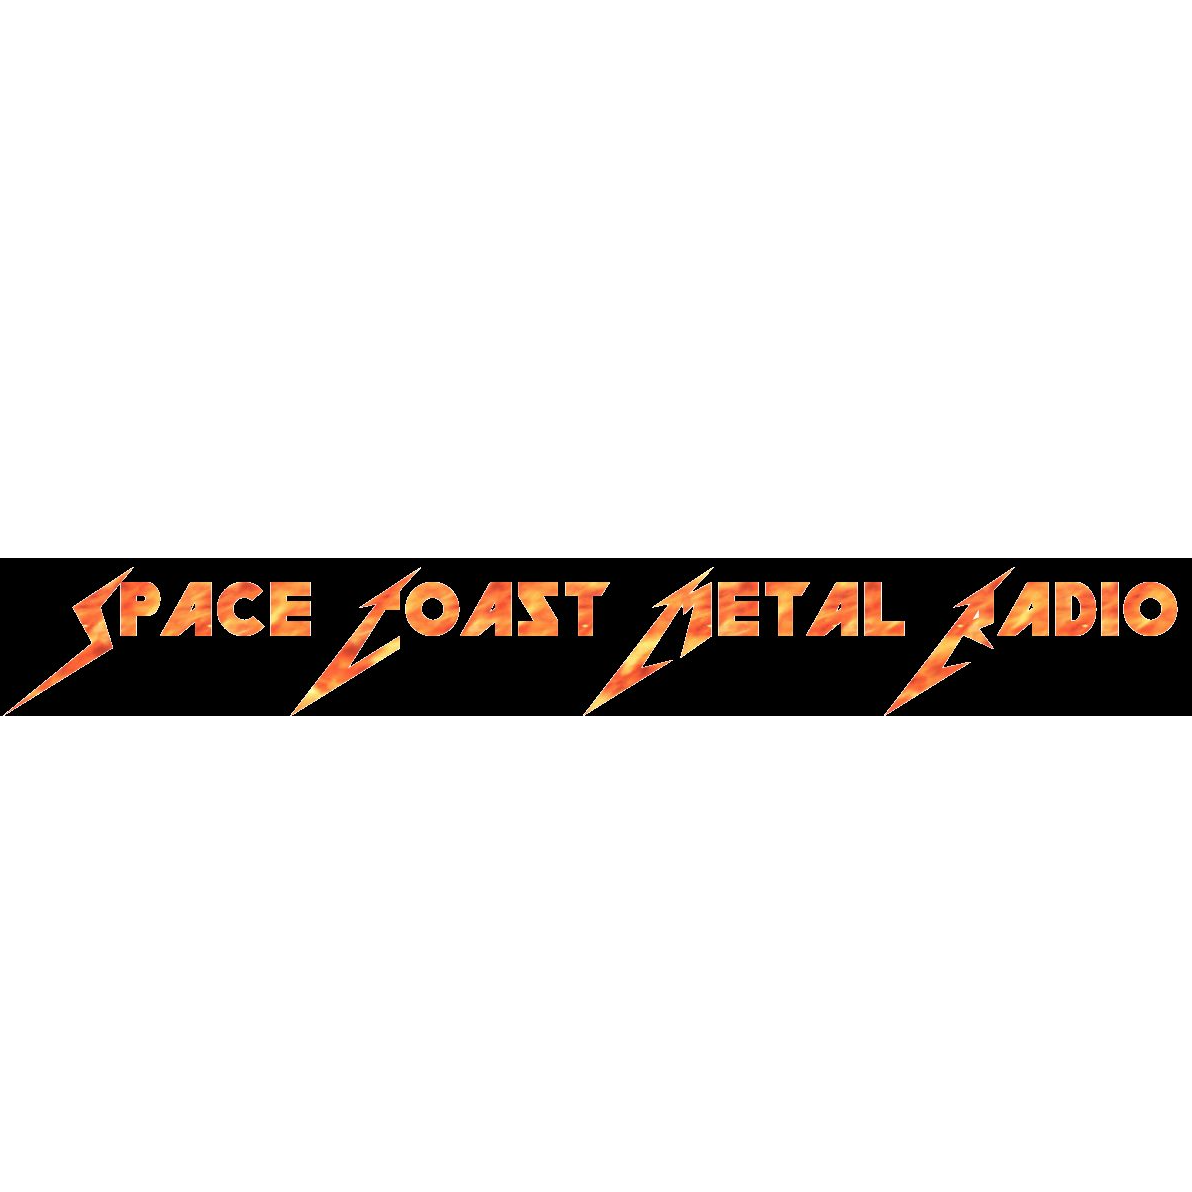 Space Coast Metal